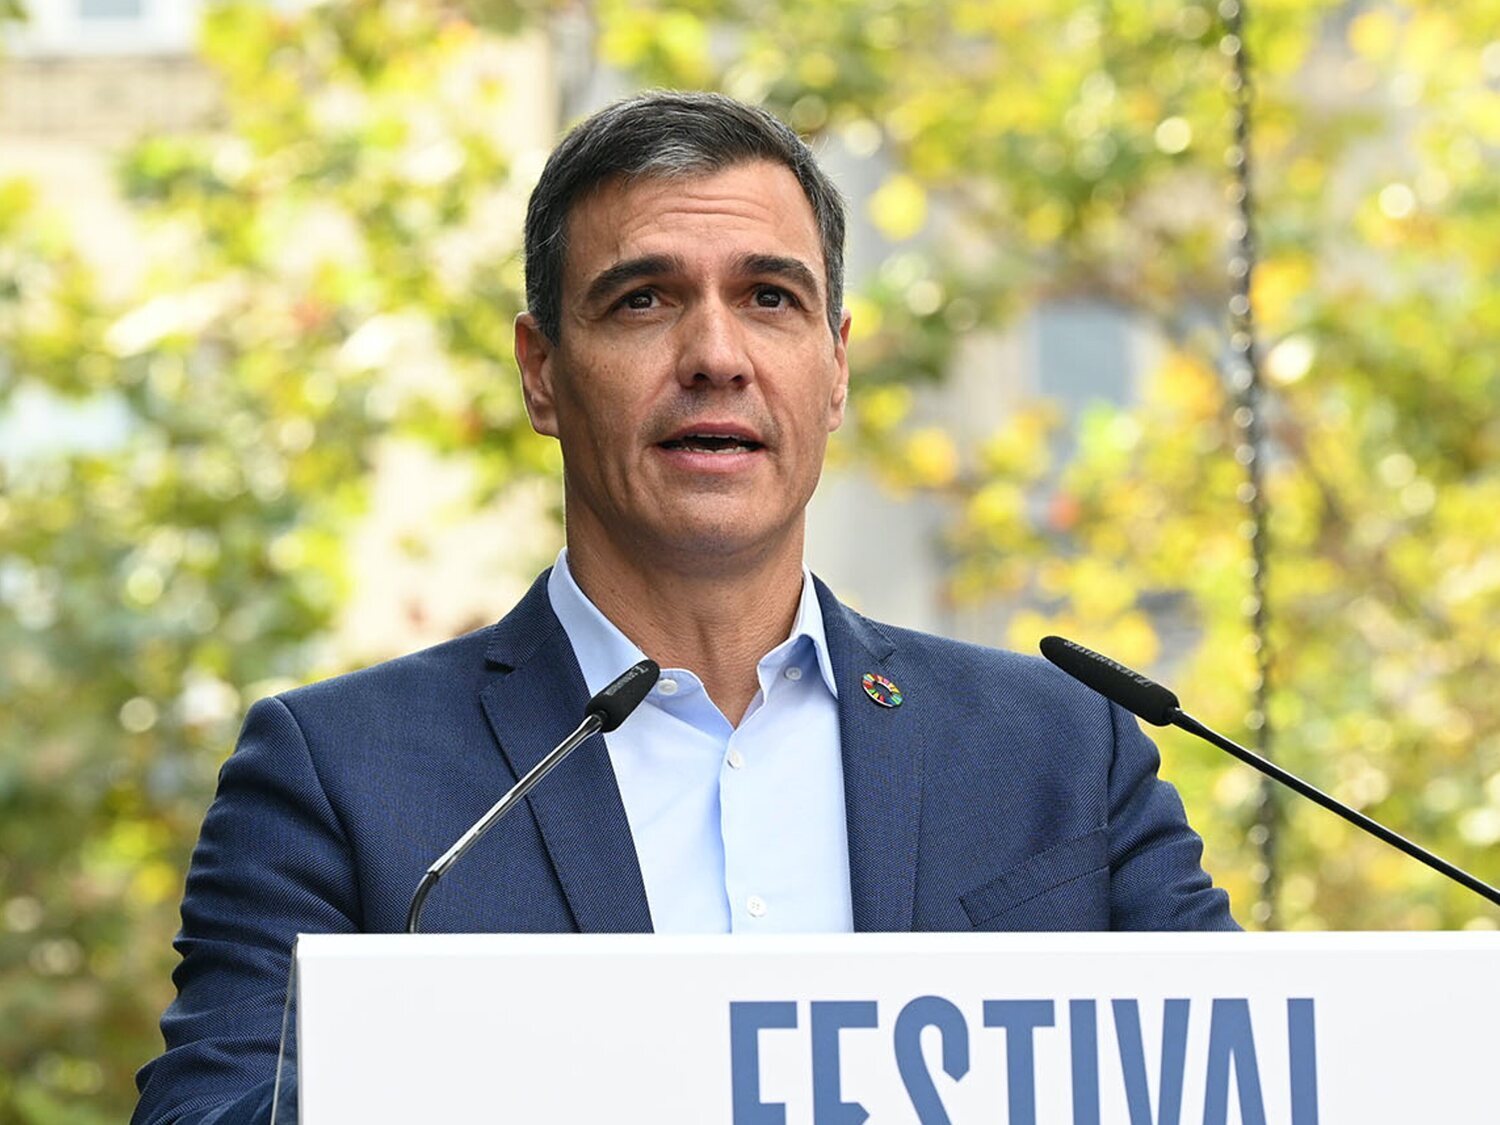 Pedro Sánchez, positivo en Covid: "Continuaré extremando las precauciones"